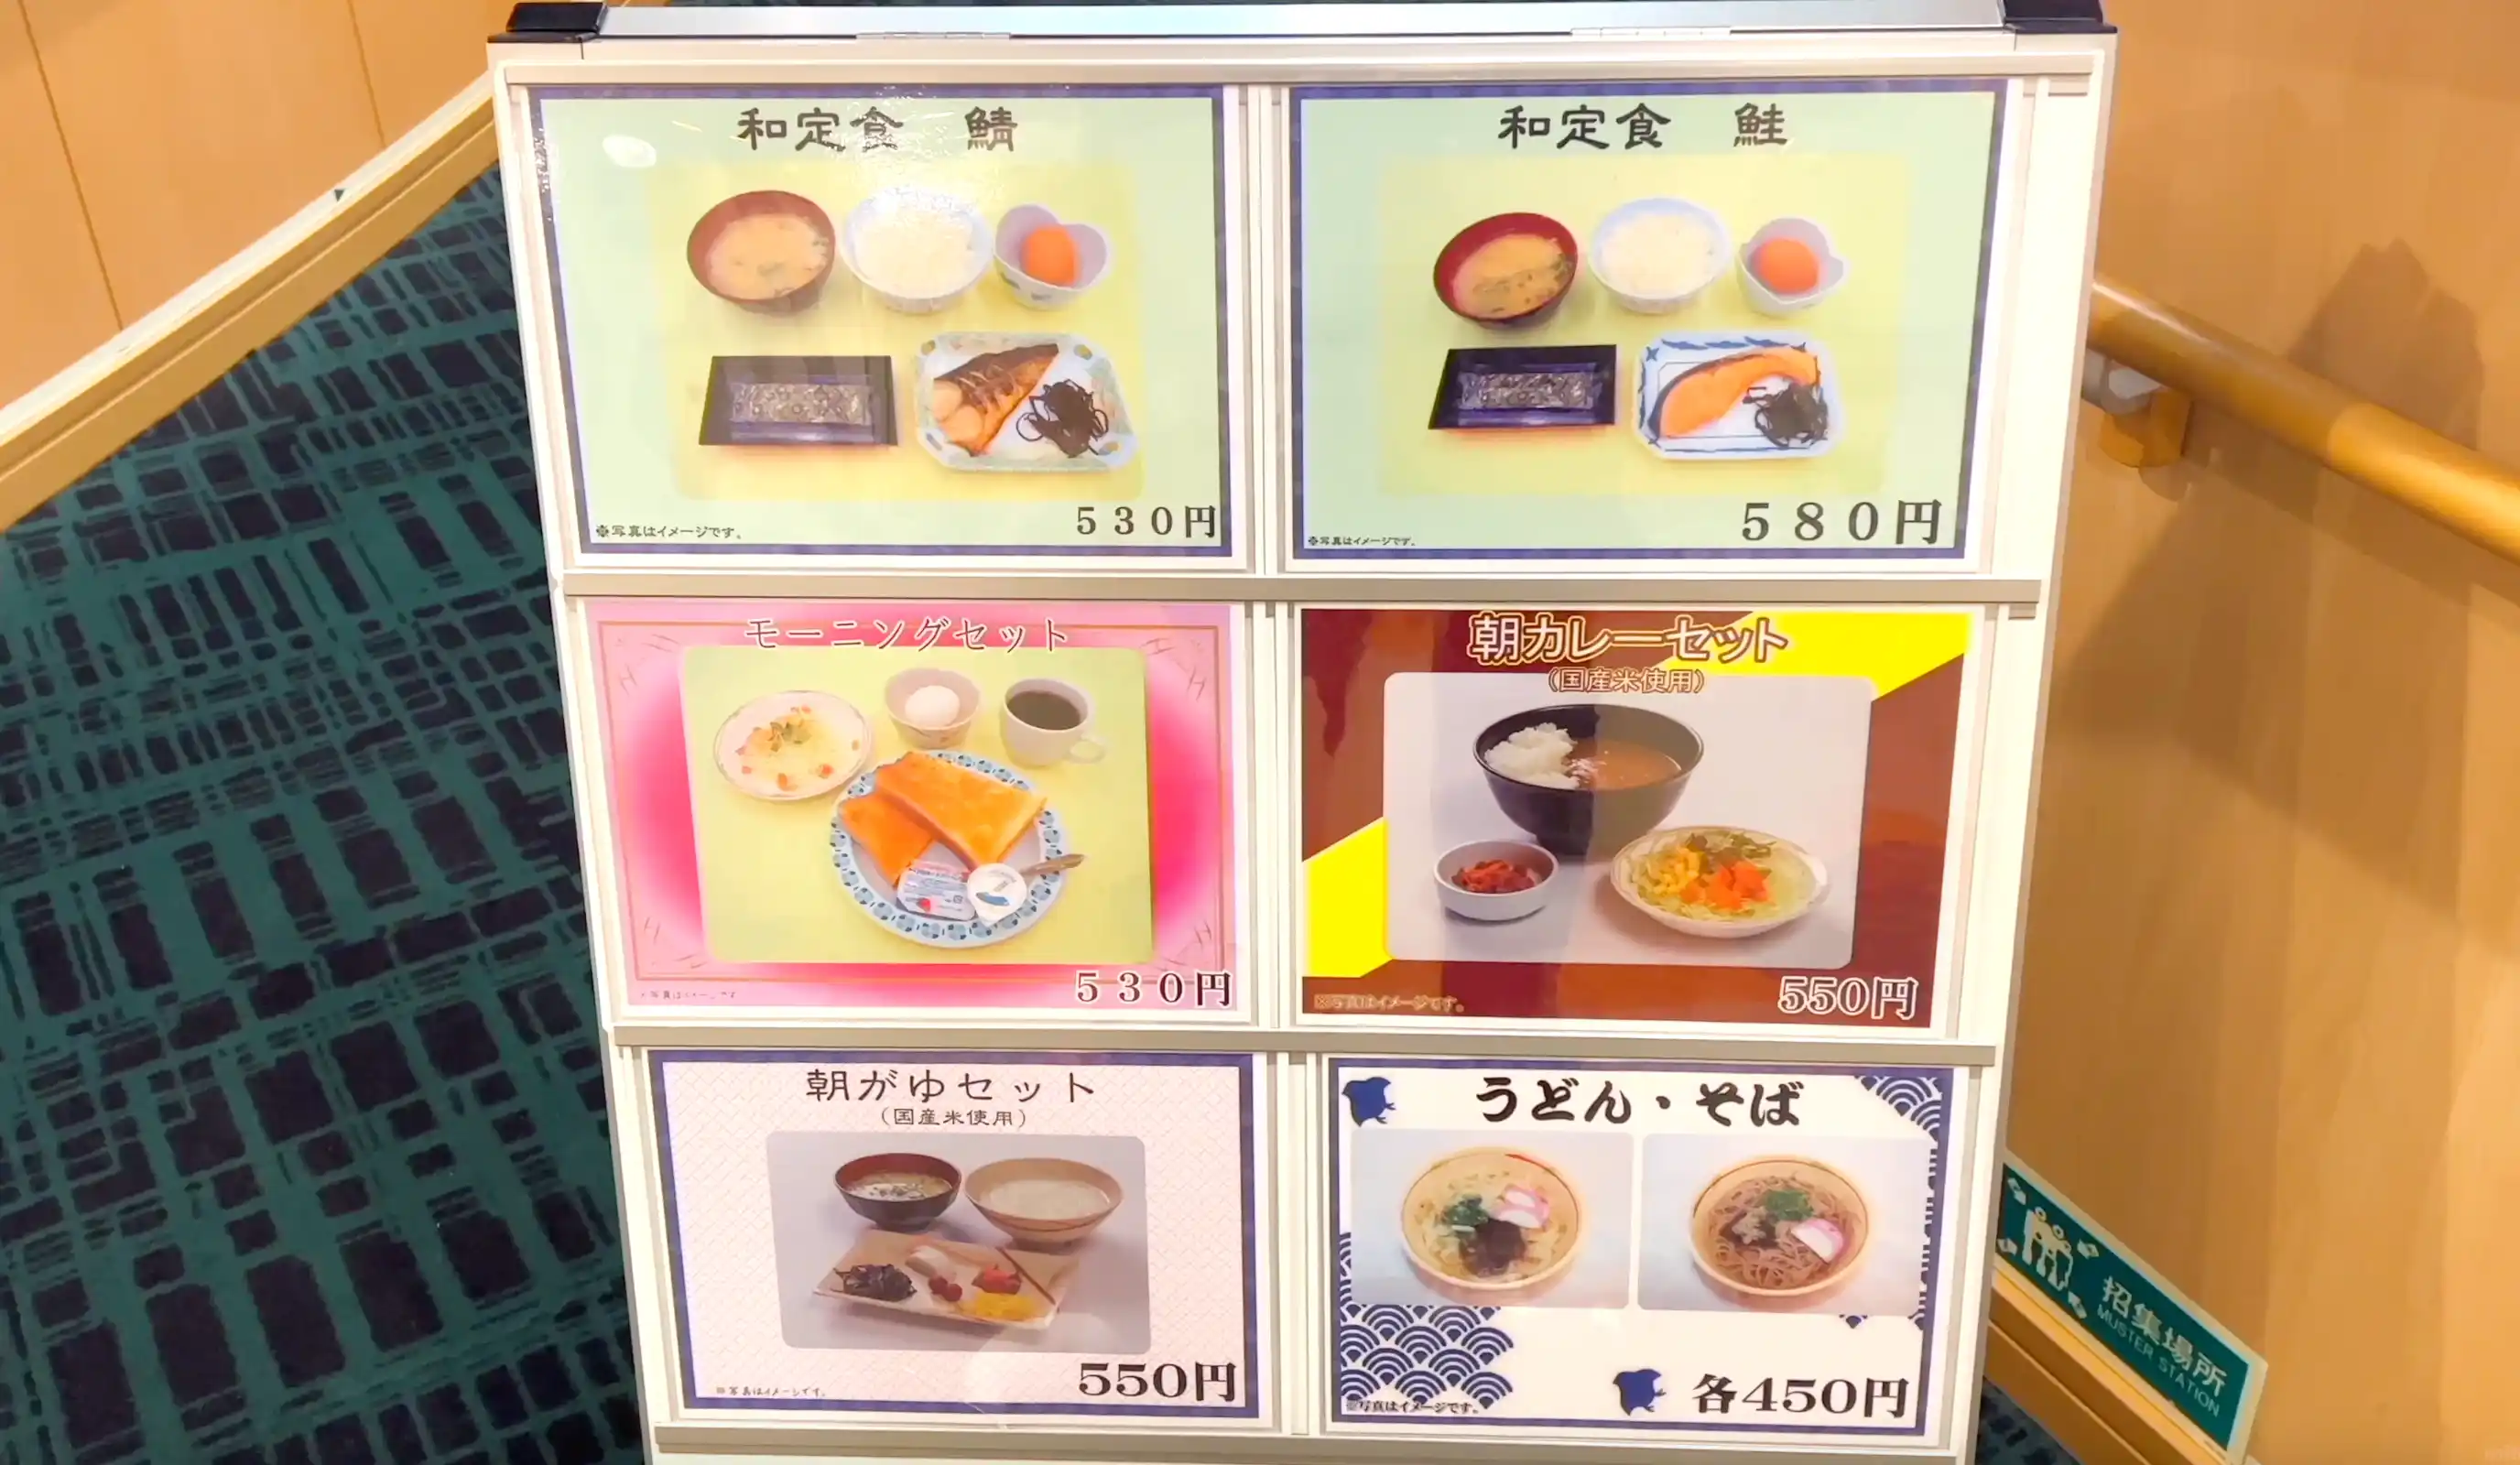 阪九フェリーひびき船内レストランの朝食セットメニュー表